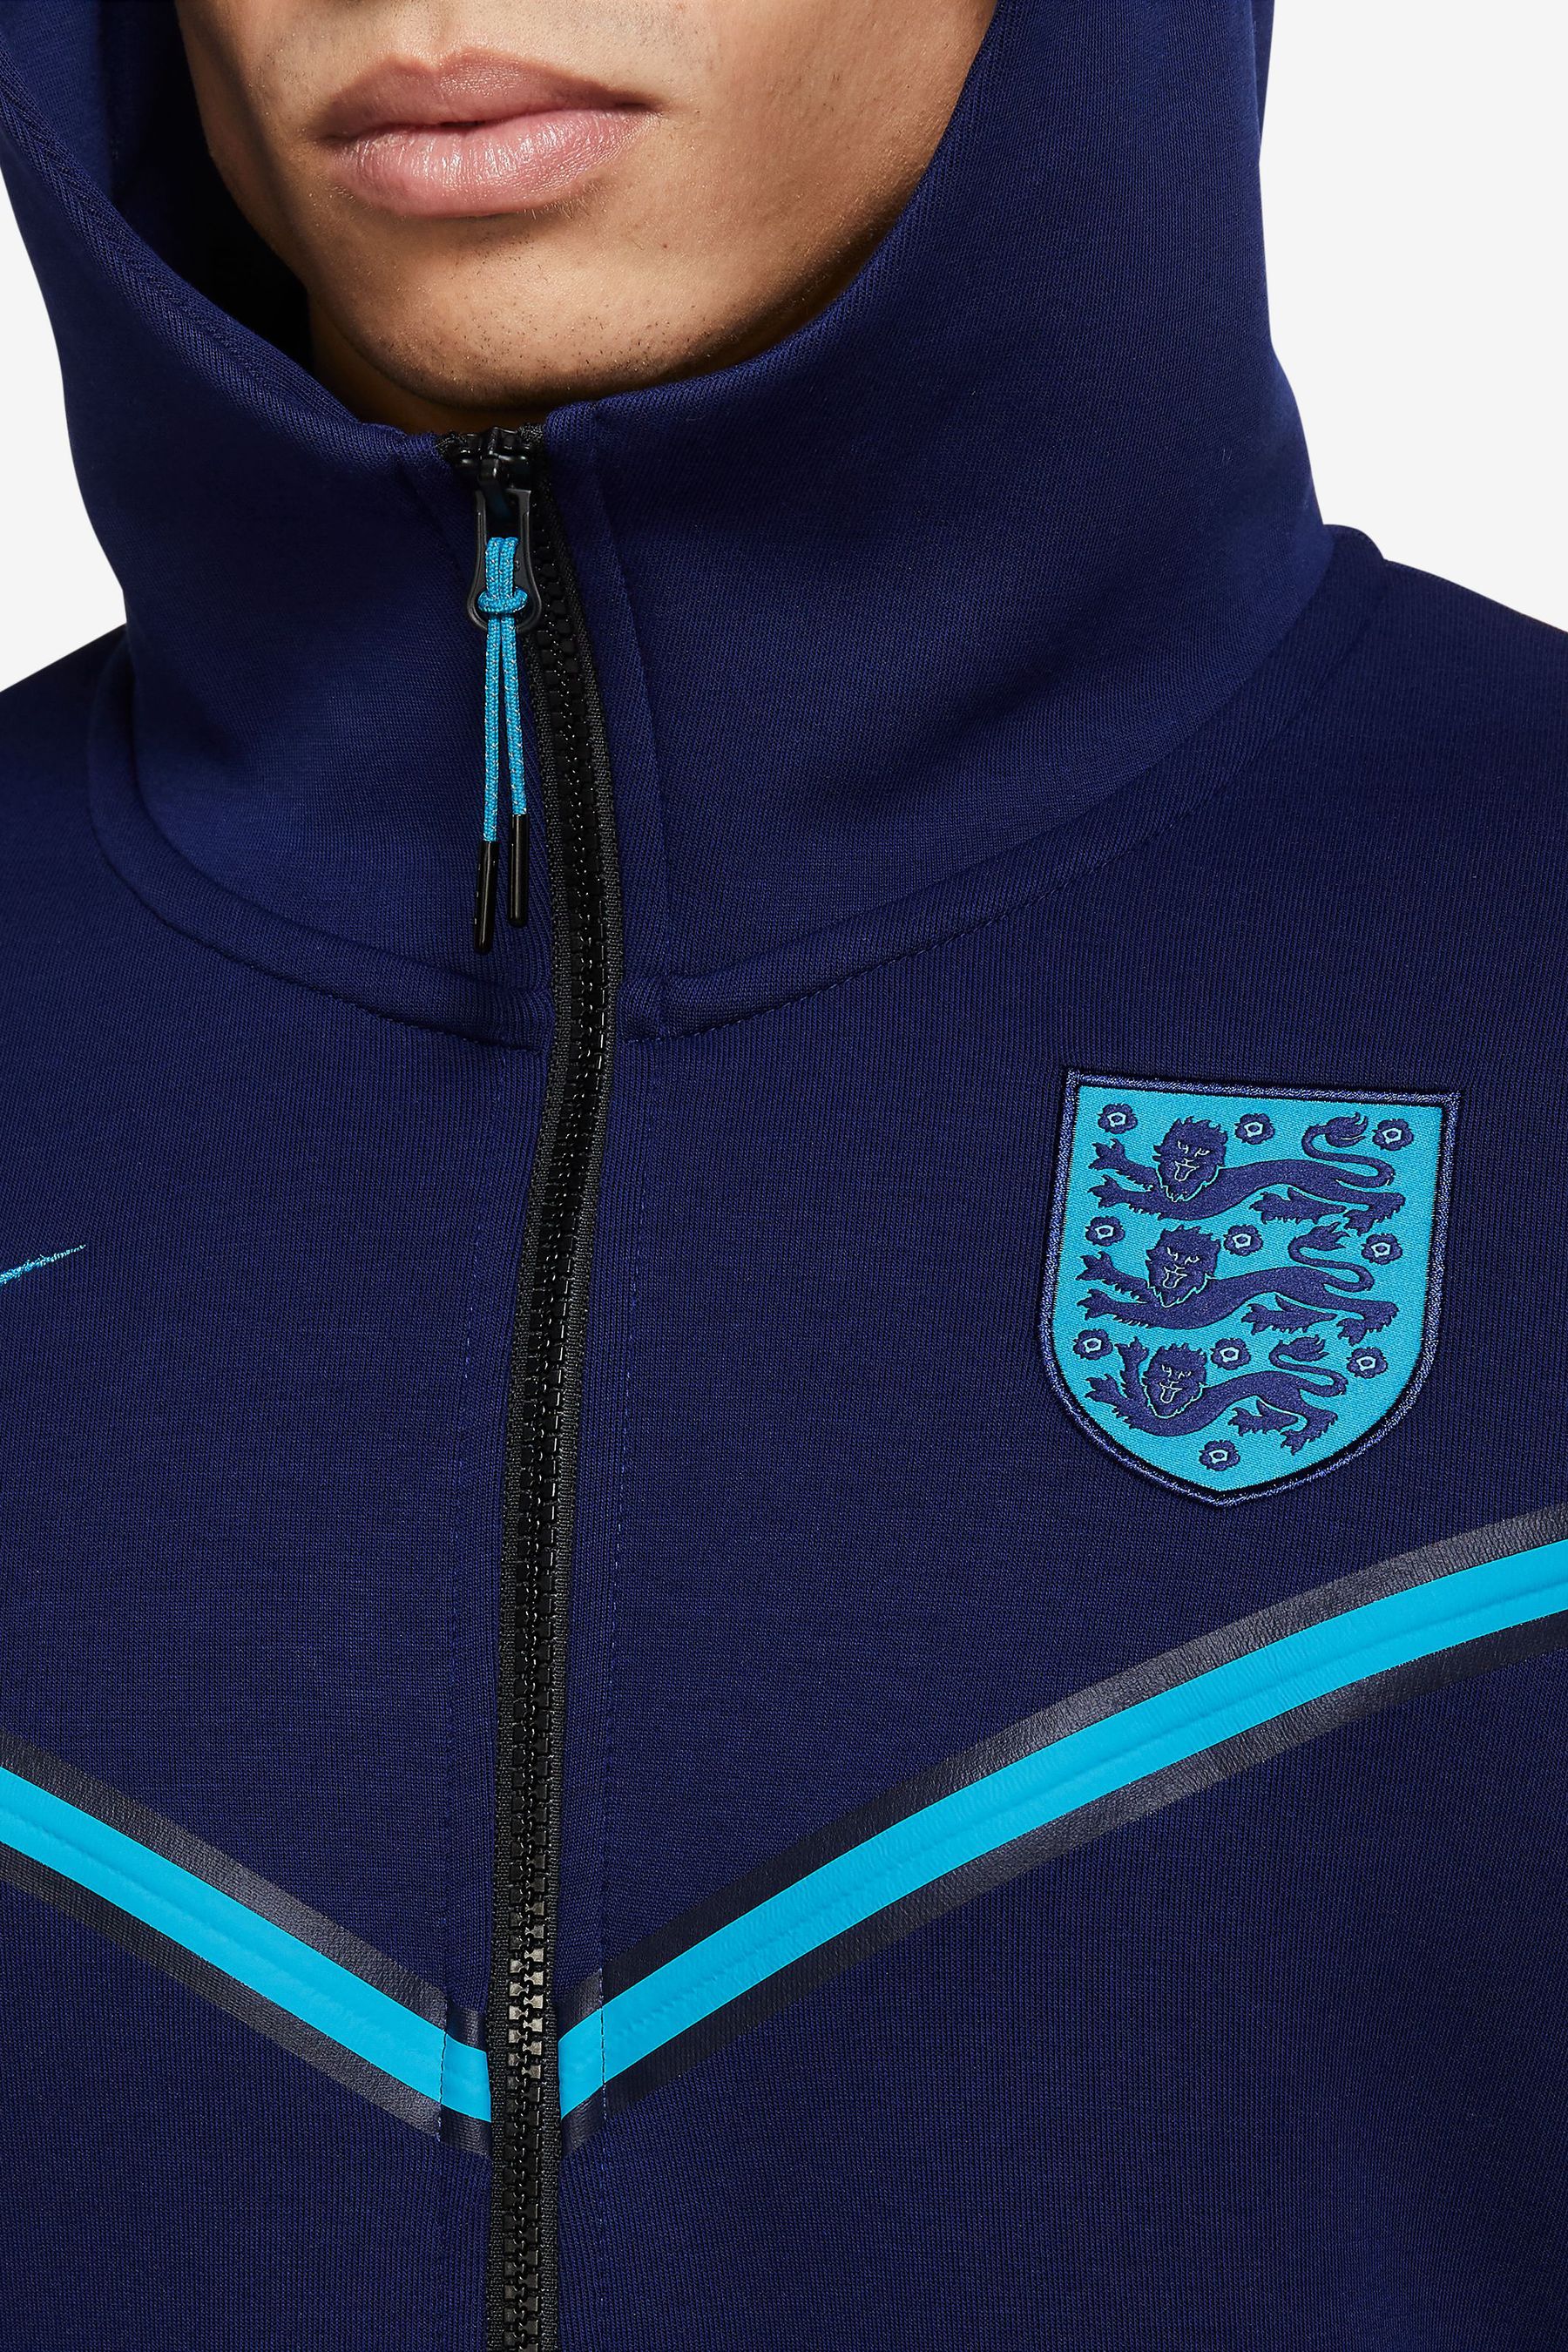 Buy Nike England Tech Fleece Hoodie from Next Ireland